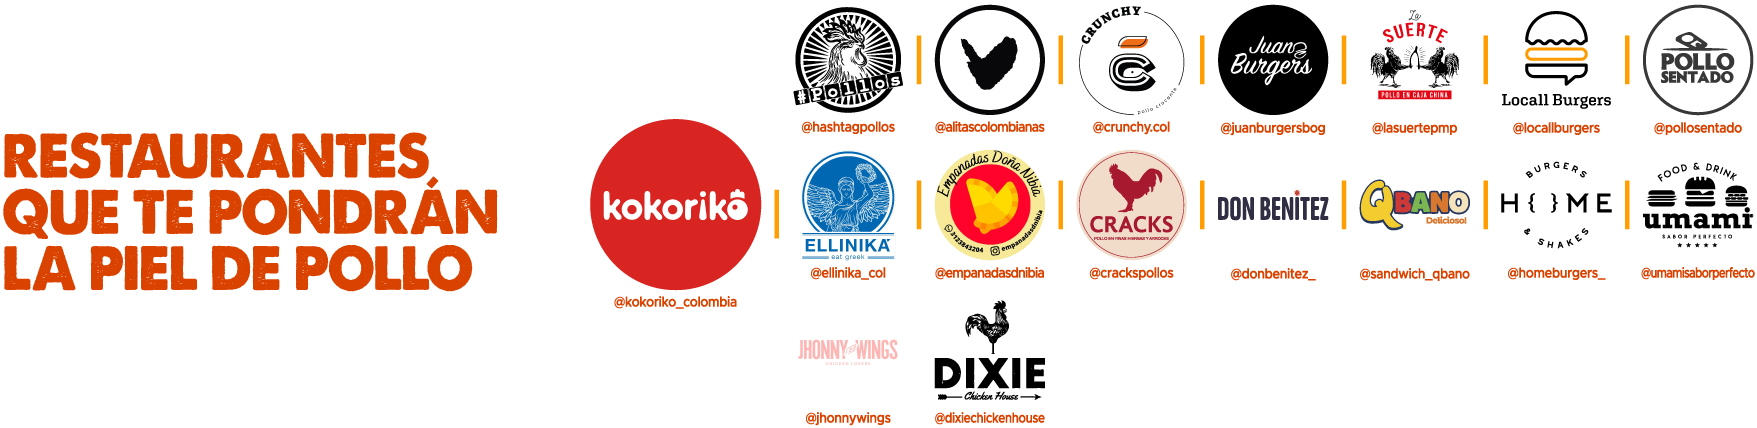 Logos de restaurantes de pollo